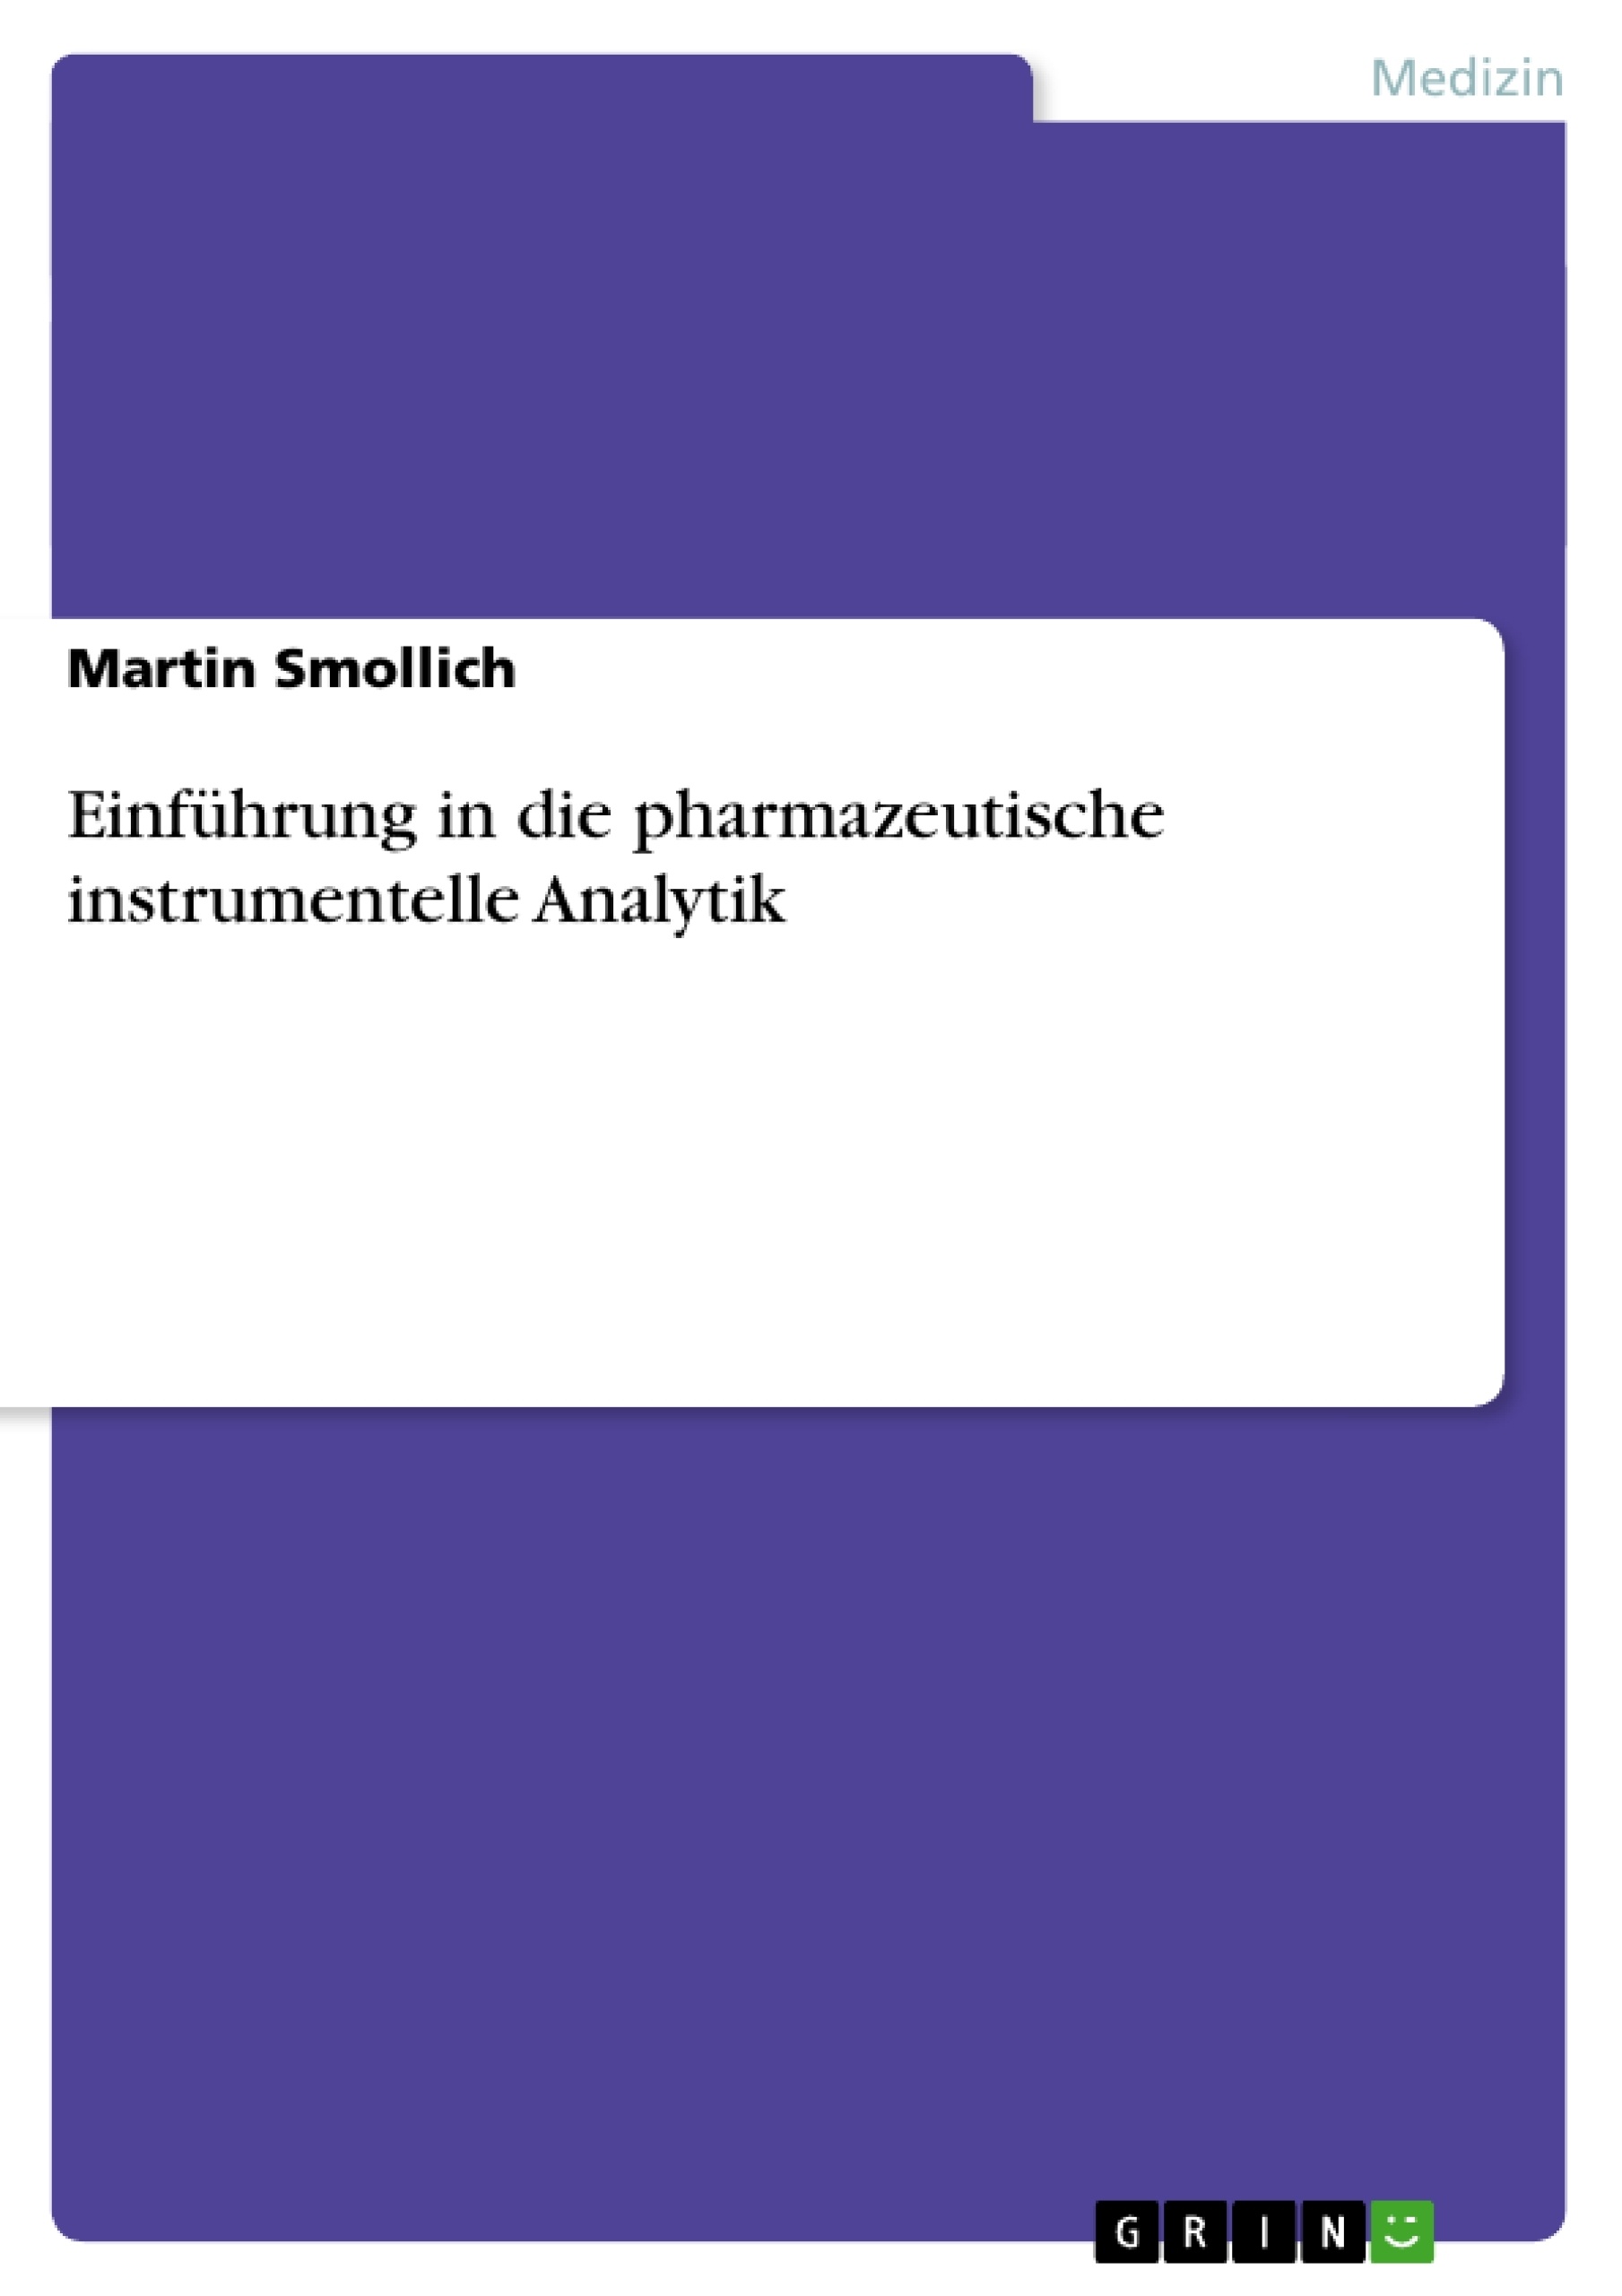 Título: Einführung in die pharmazeutische instrumentelle Analytik